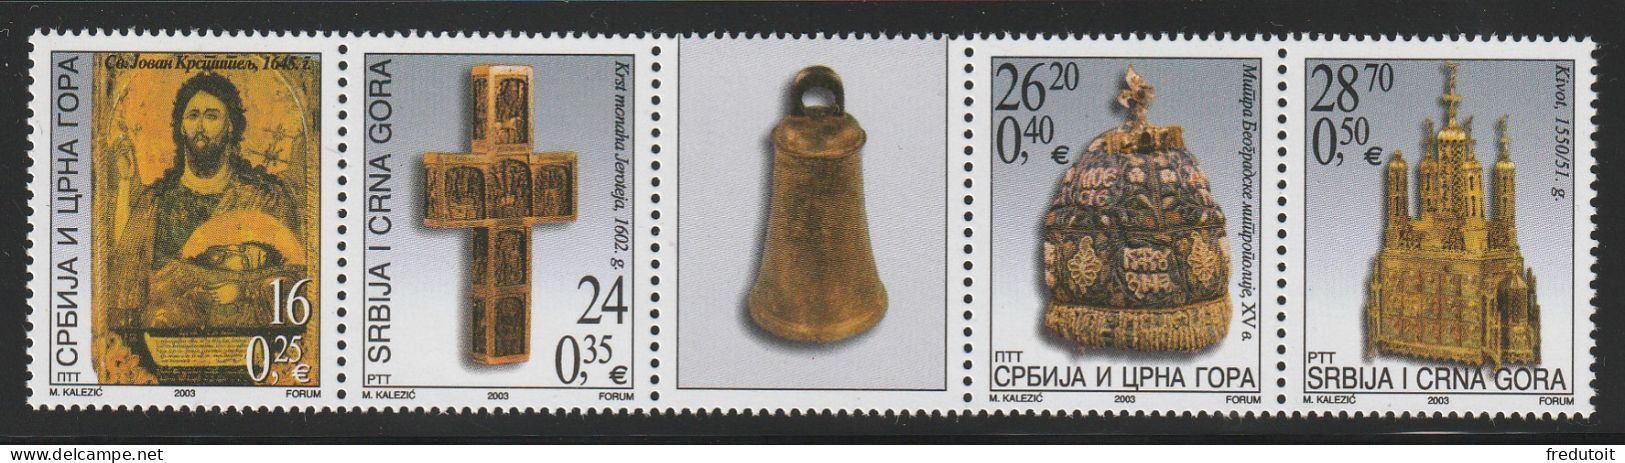 Serbie Et Montenegro - N°2998/3001 ** (2003) Pièces Du Musée De L'église Orthodoxe Serbe. - Serbia